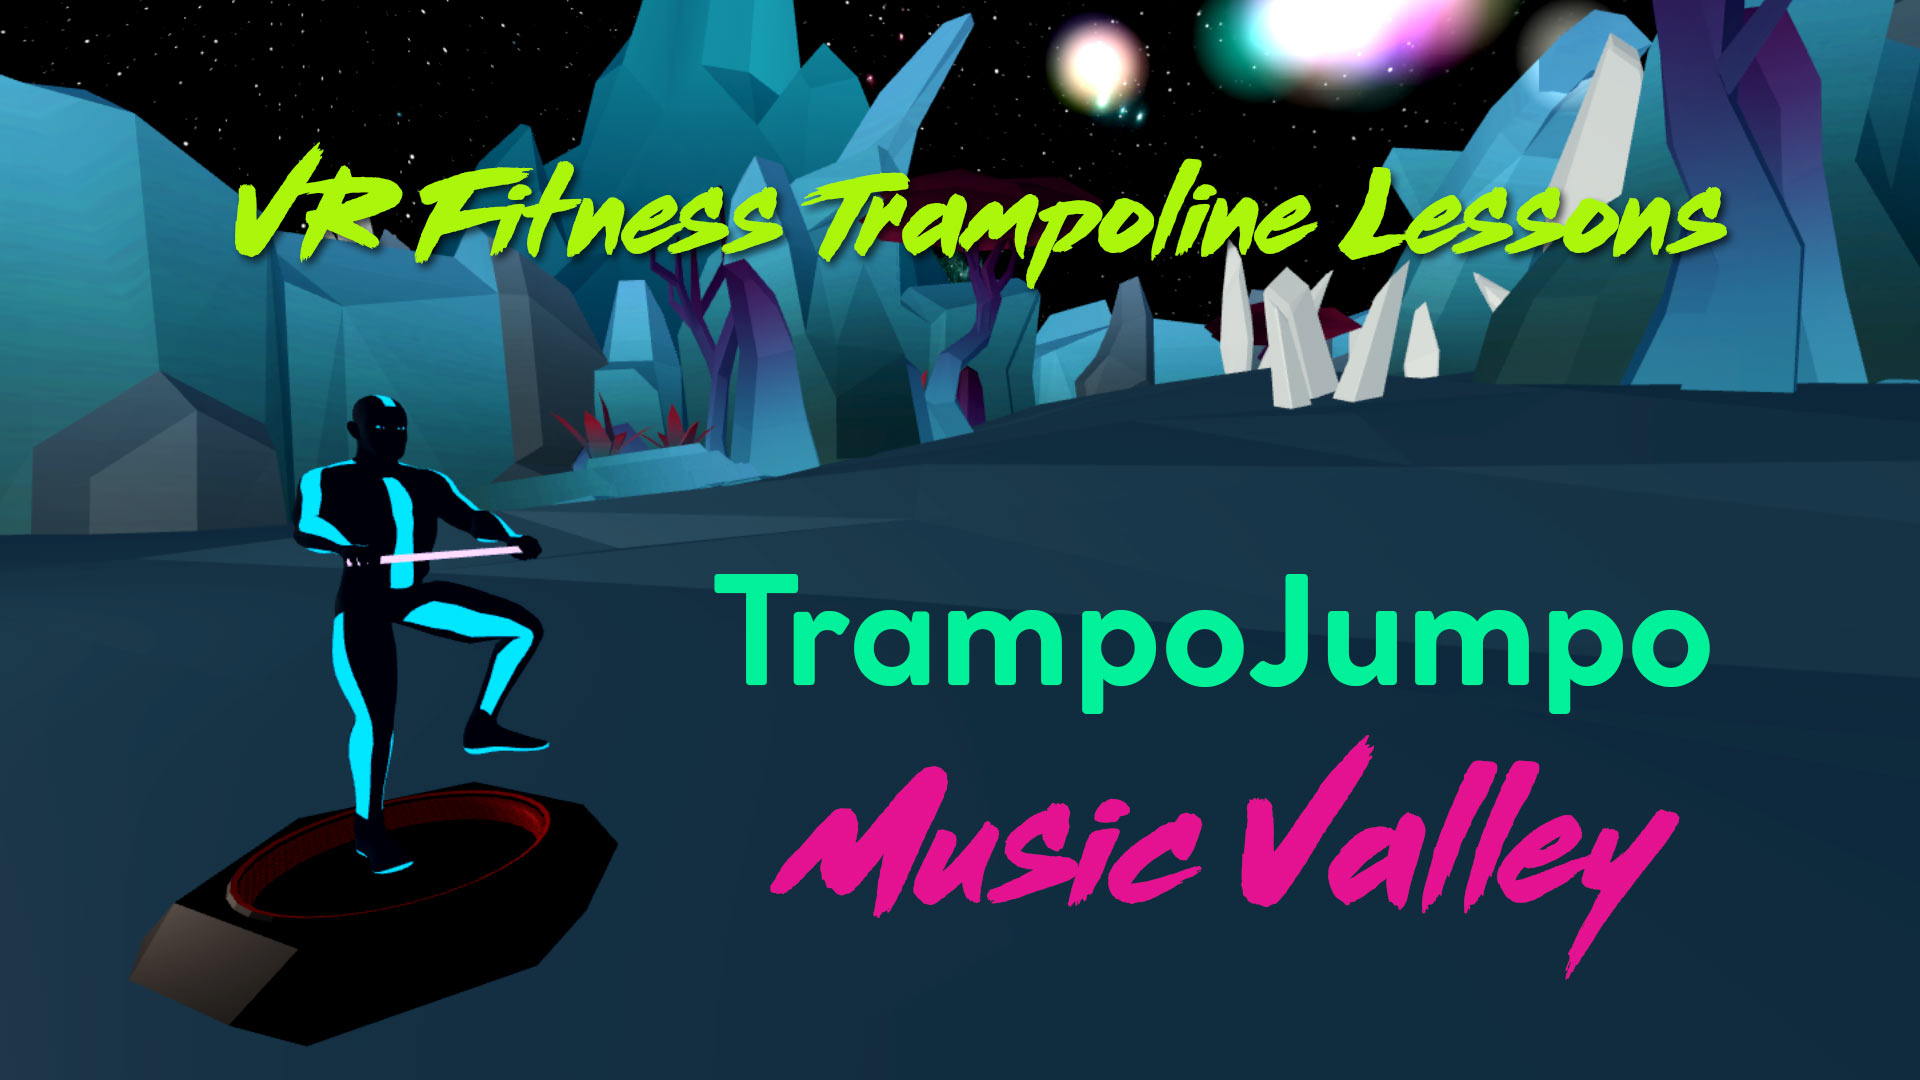 VR Fitness Trampoline TrampoJumpo